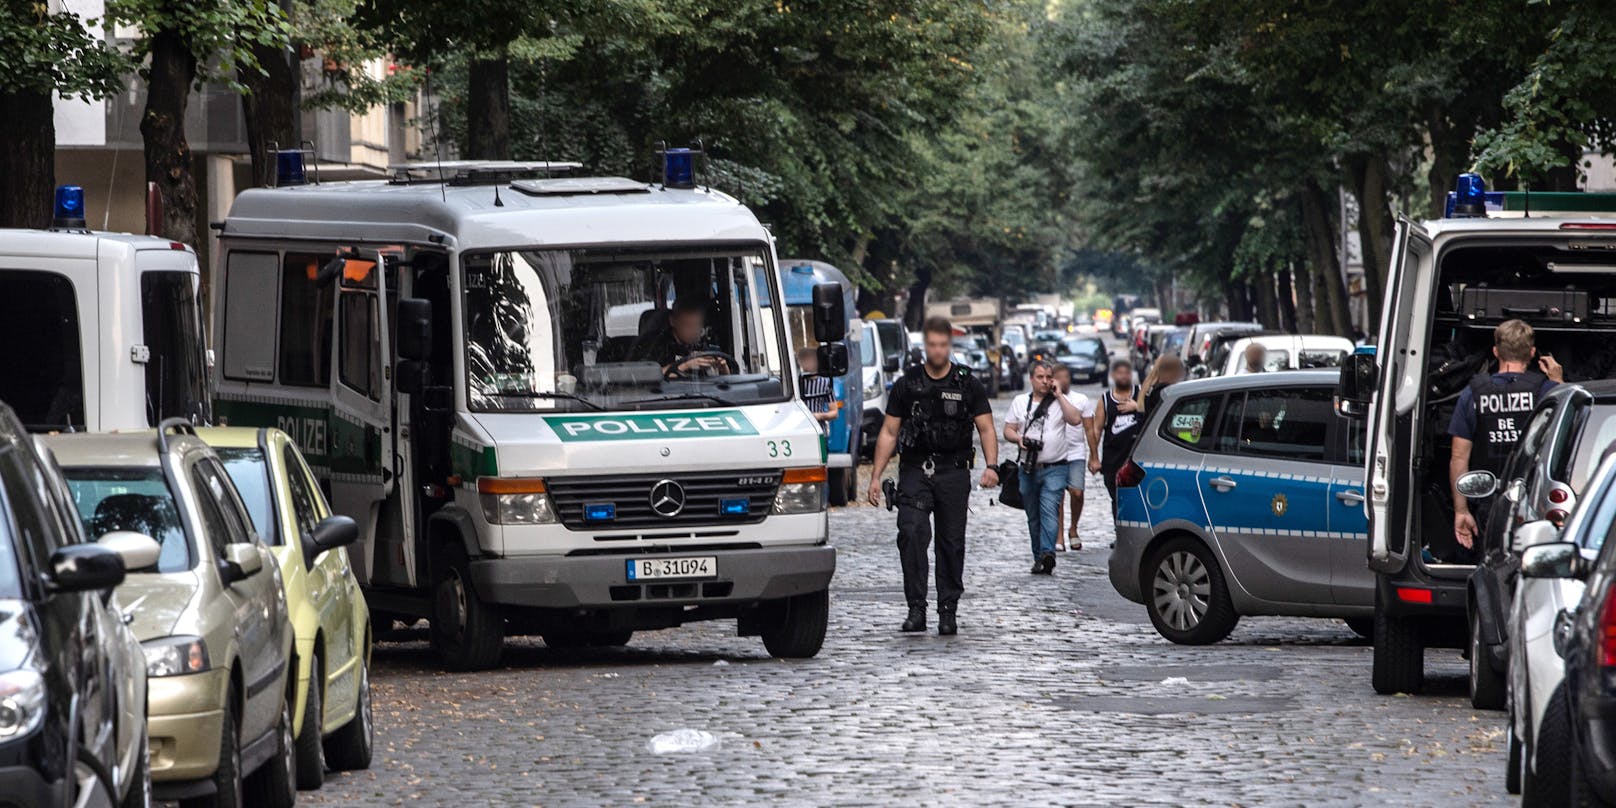 Polizeigroßeinsatz in Berlin: Ein Vater soll seine dreijährige Tochter ermordet haben. (Symbolbild)